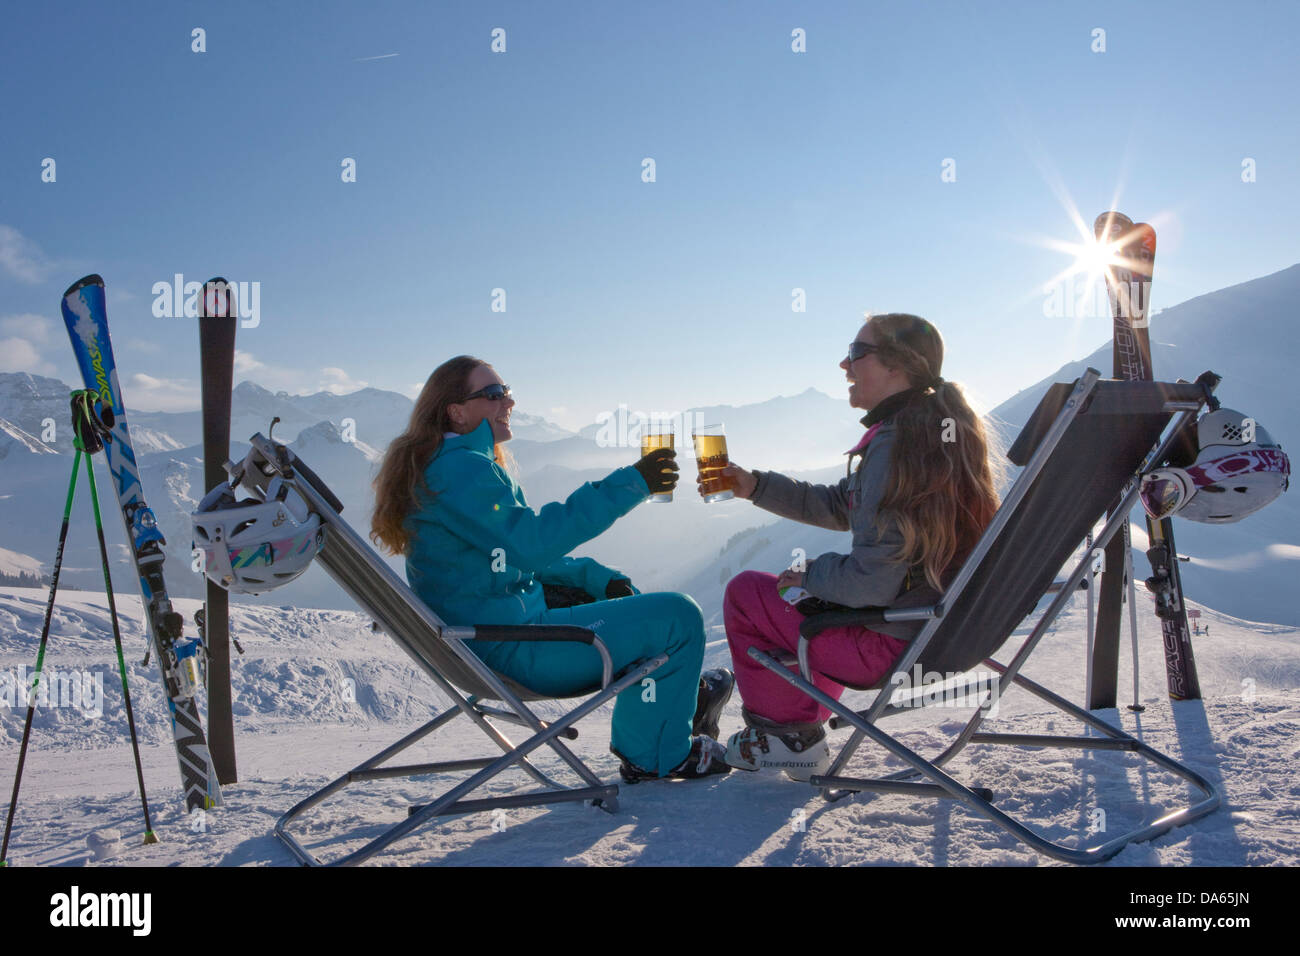 Pausa, Parar, tumbonas, zona de esquí, Adelboden, invierno, cantón de Berna, en el Oberland Bernés, mujeres, beber, turismo, vacaciones, swi Foto de stock